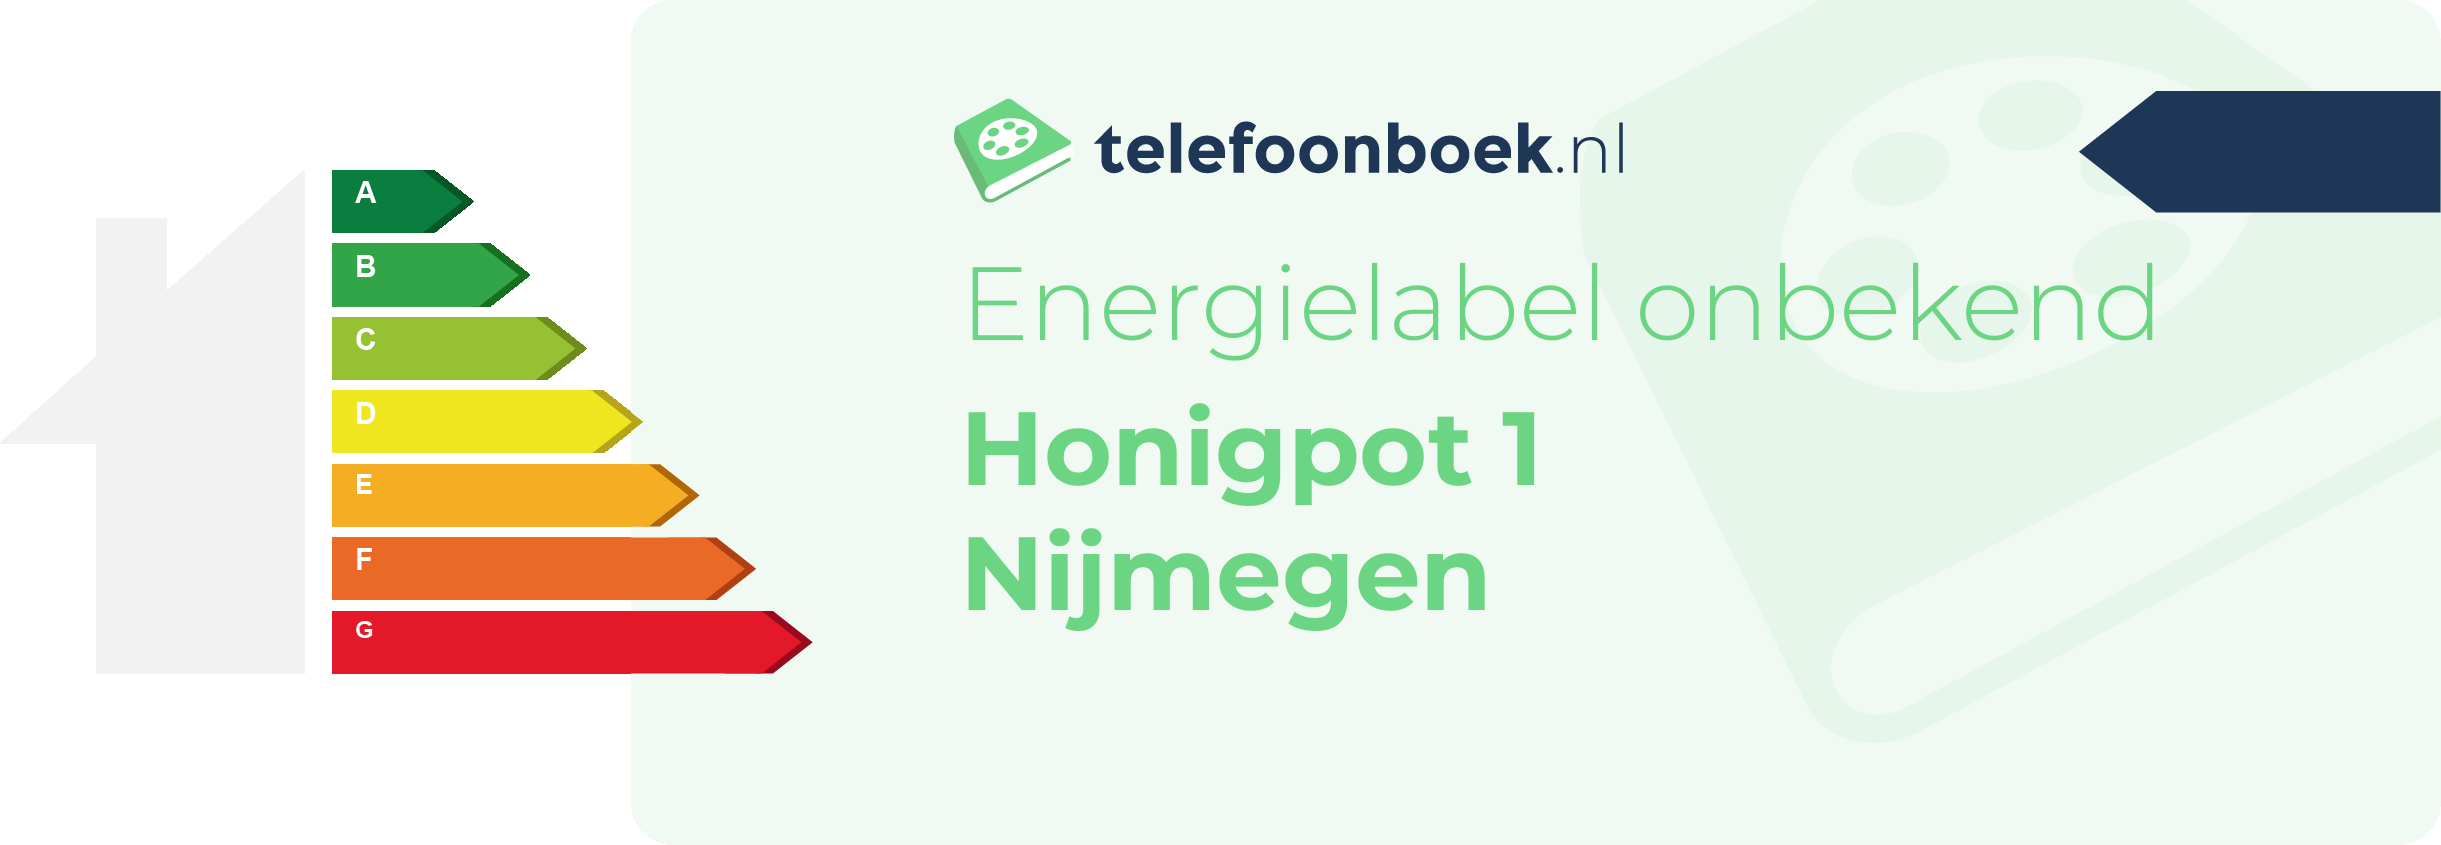 Energielabel Honigpot 1 Nijmegen